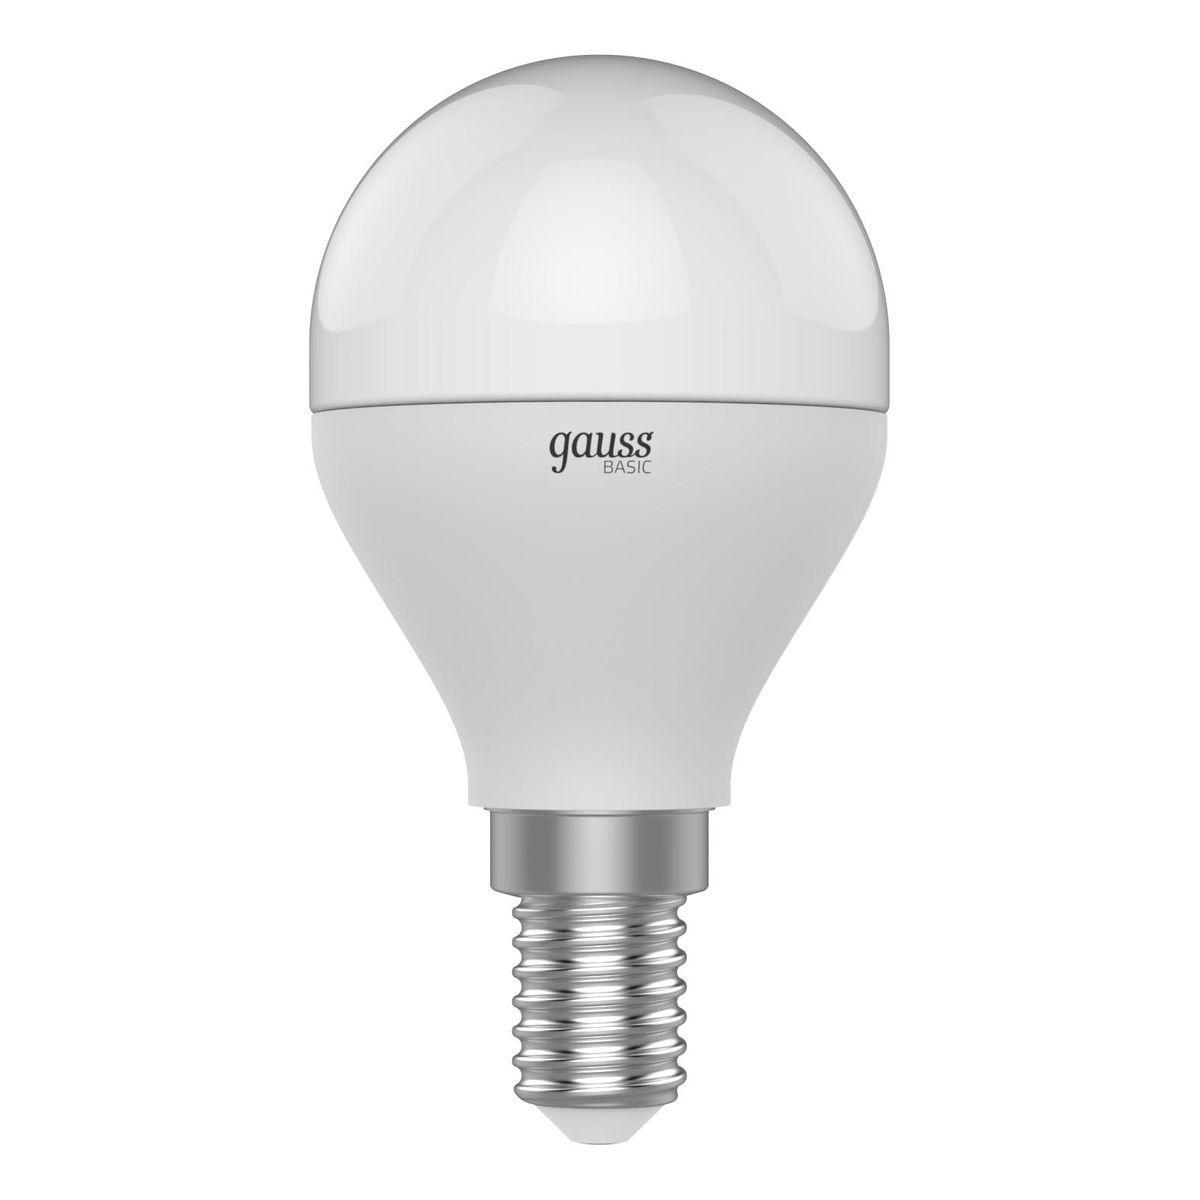 Gauss Лампа Basic Шар 7,5W 690lm 4100K E14 LED